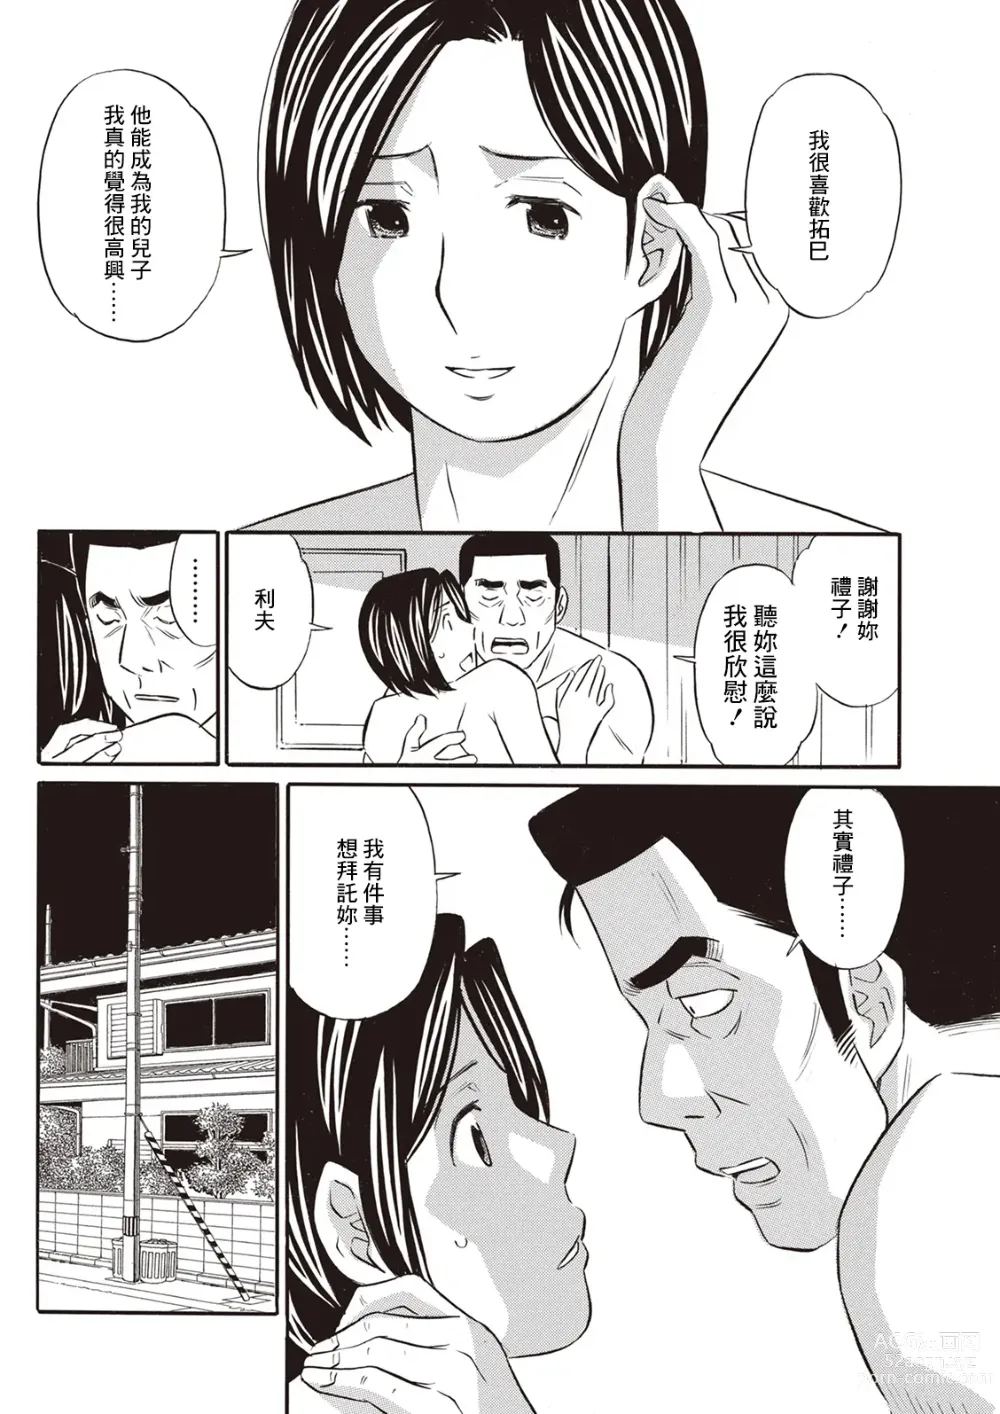 Page 4 of manga Afureru Haha